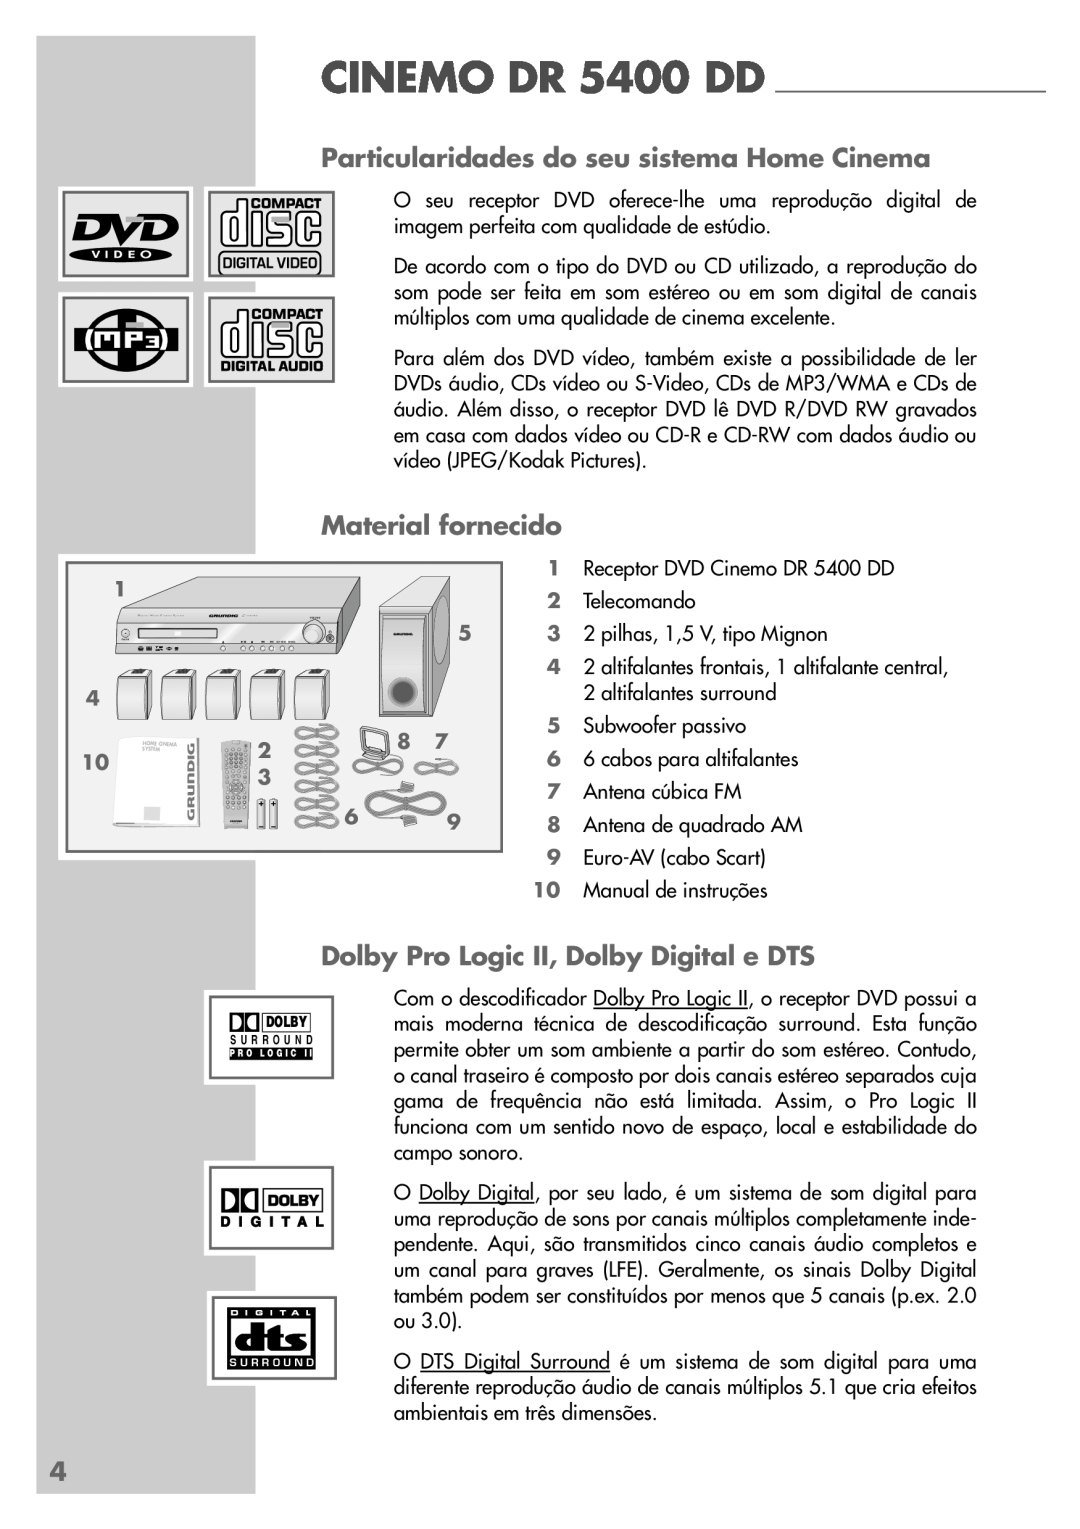 Grundig manual Particularidades do seu sistema Home Cinema, Material fornecido, CINEMO DR 5400 DD 